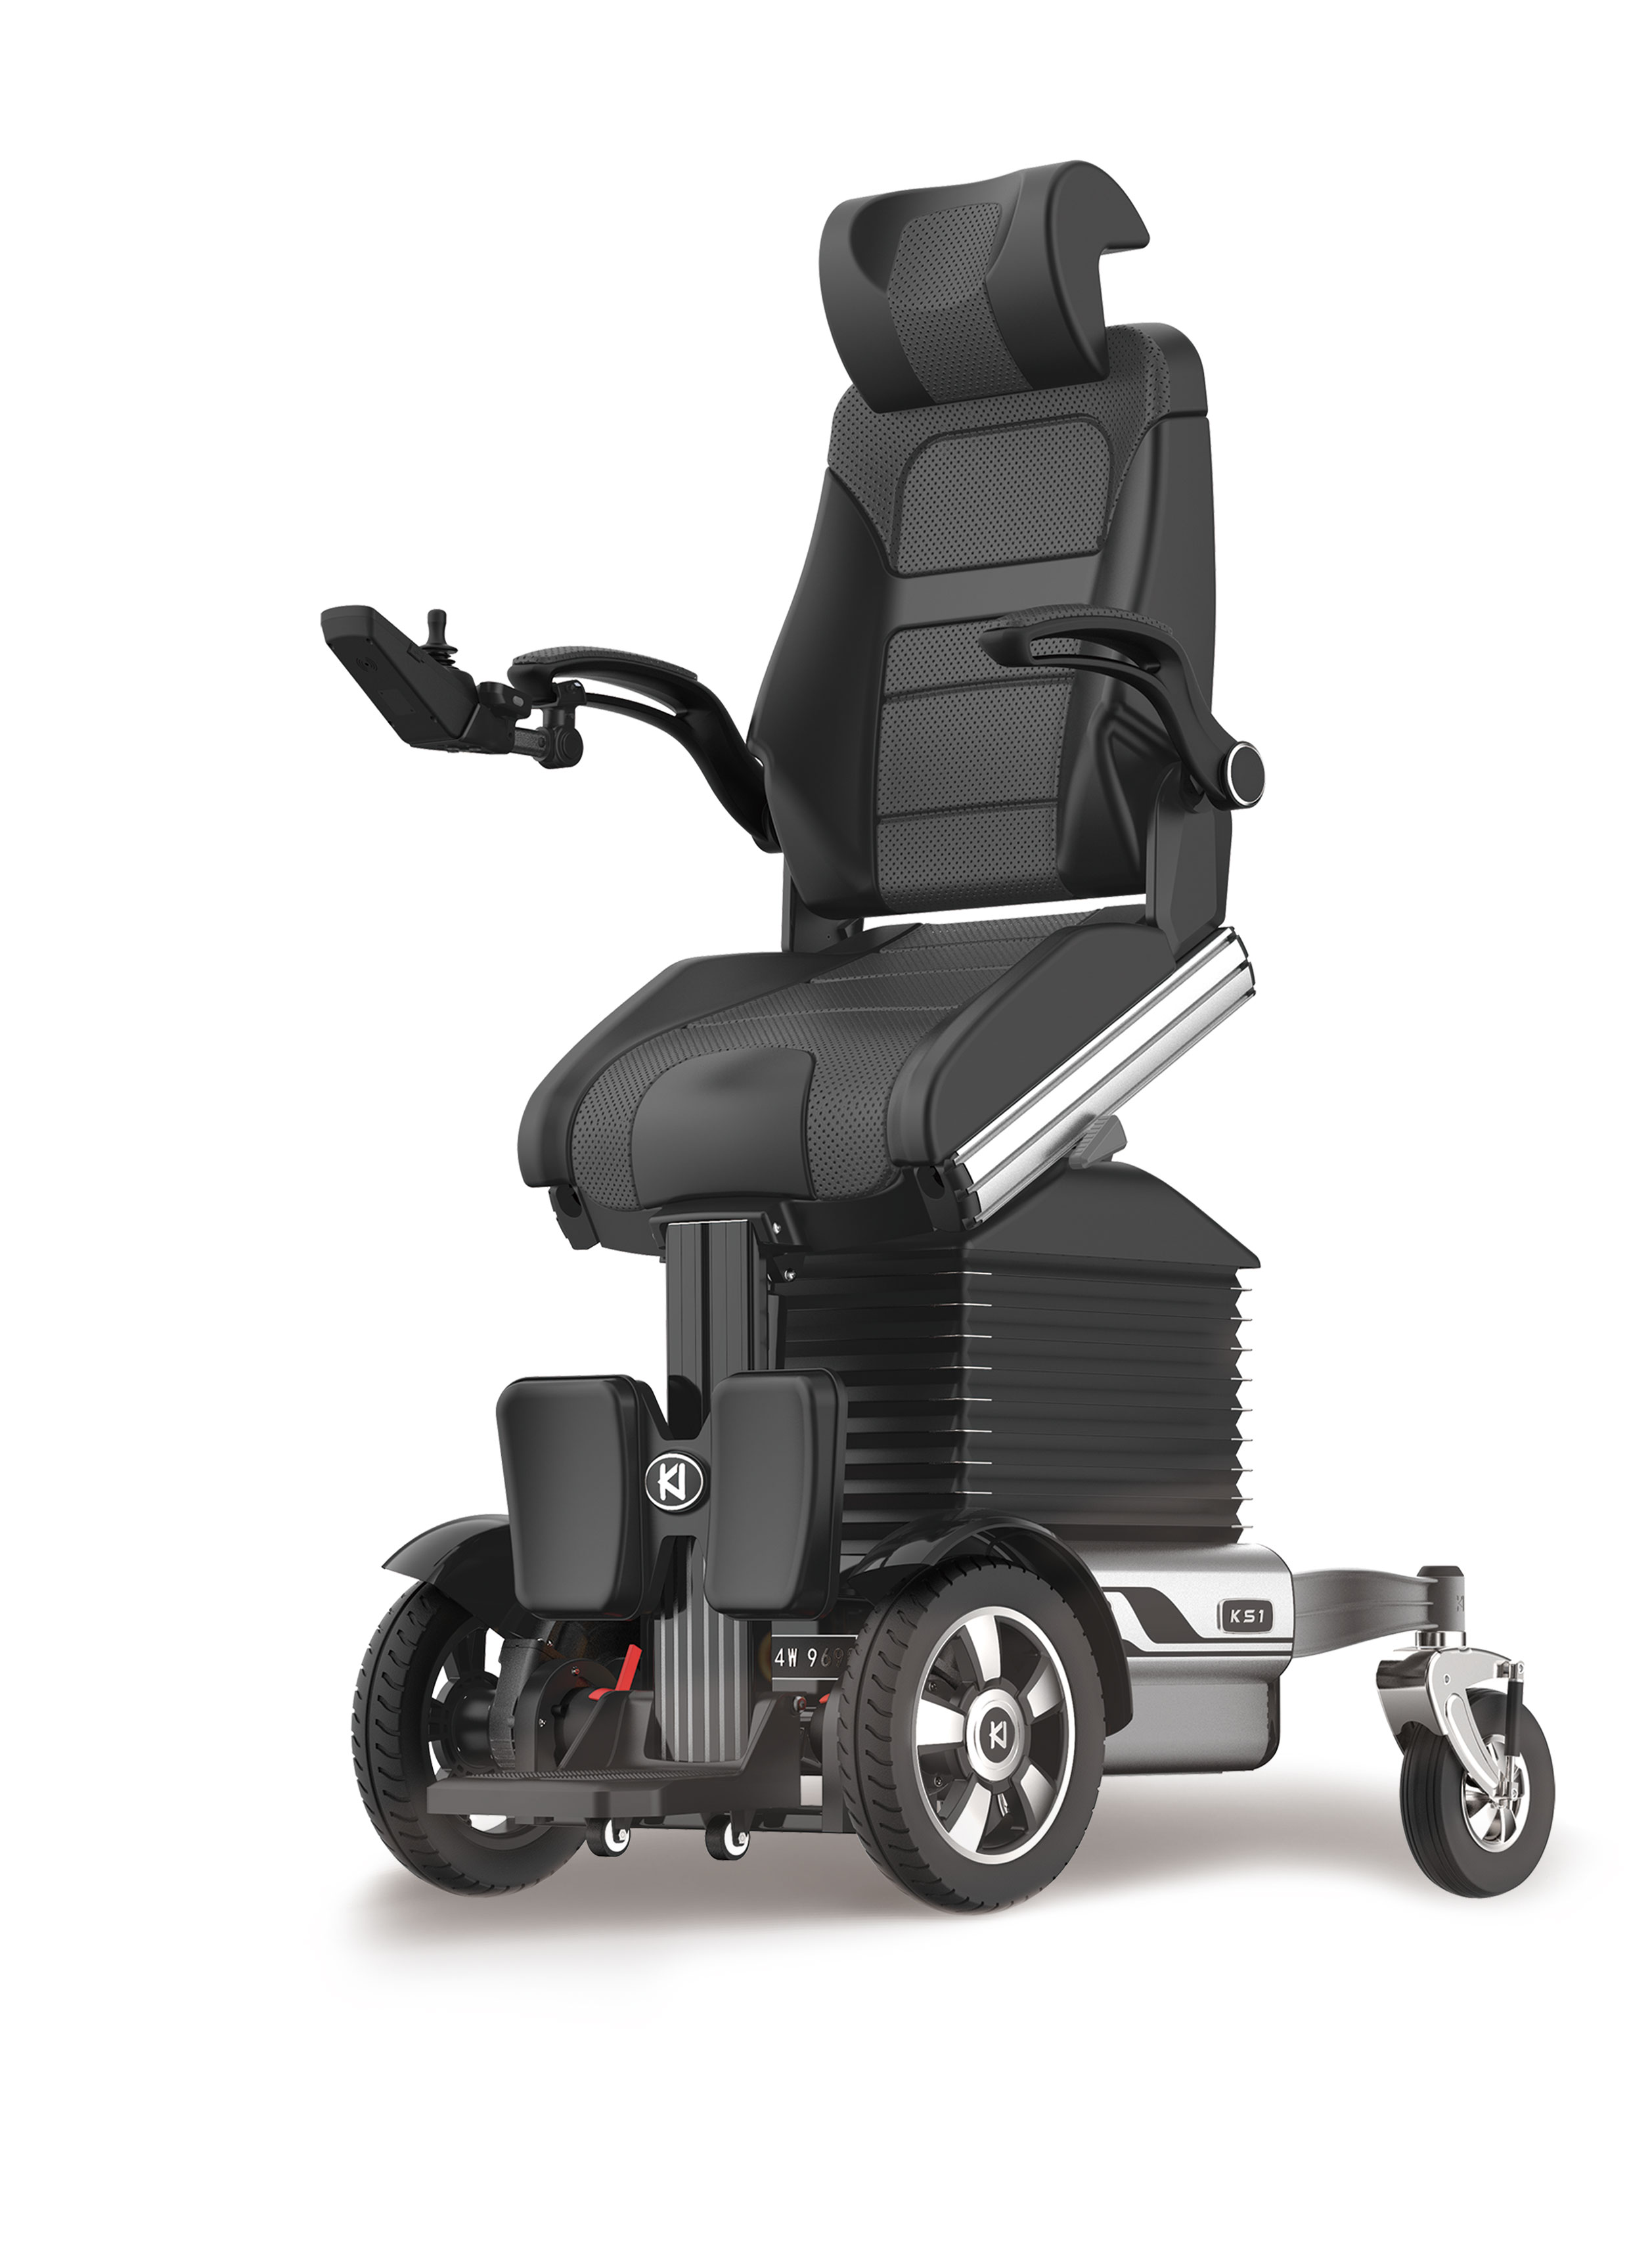 电动轮椅对比手动轮椅的优势有哪些? - 元亨电动科技